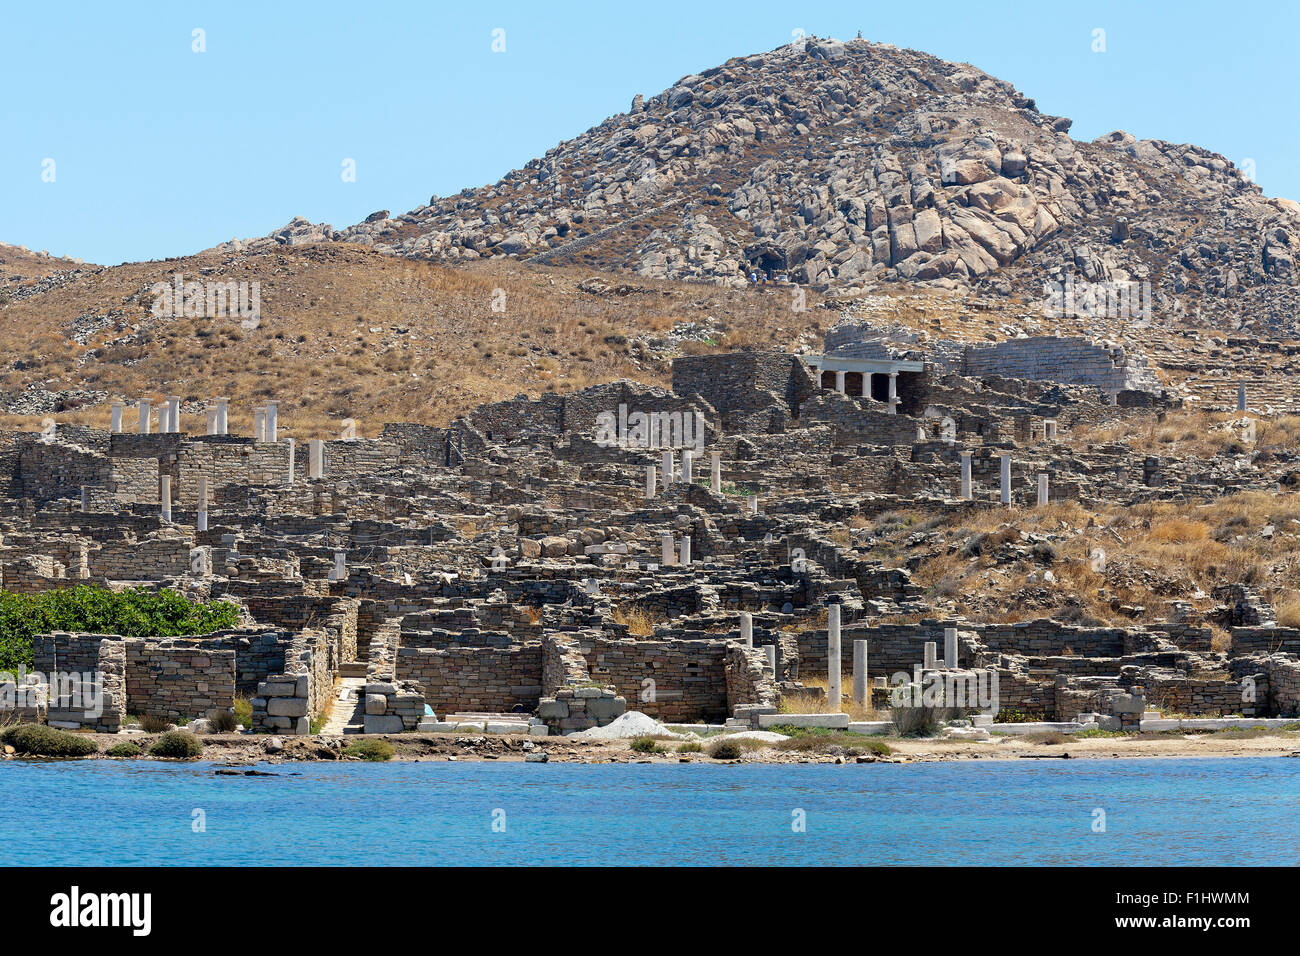 Rovine romane sull'isola greca di Delos, nelle Cicladi Foto Stock